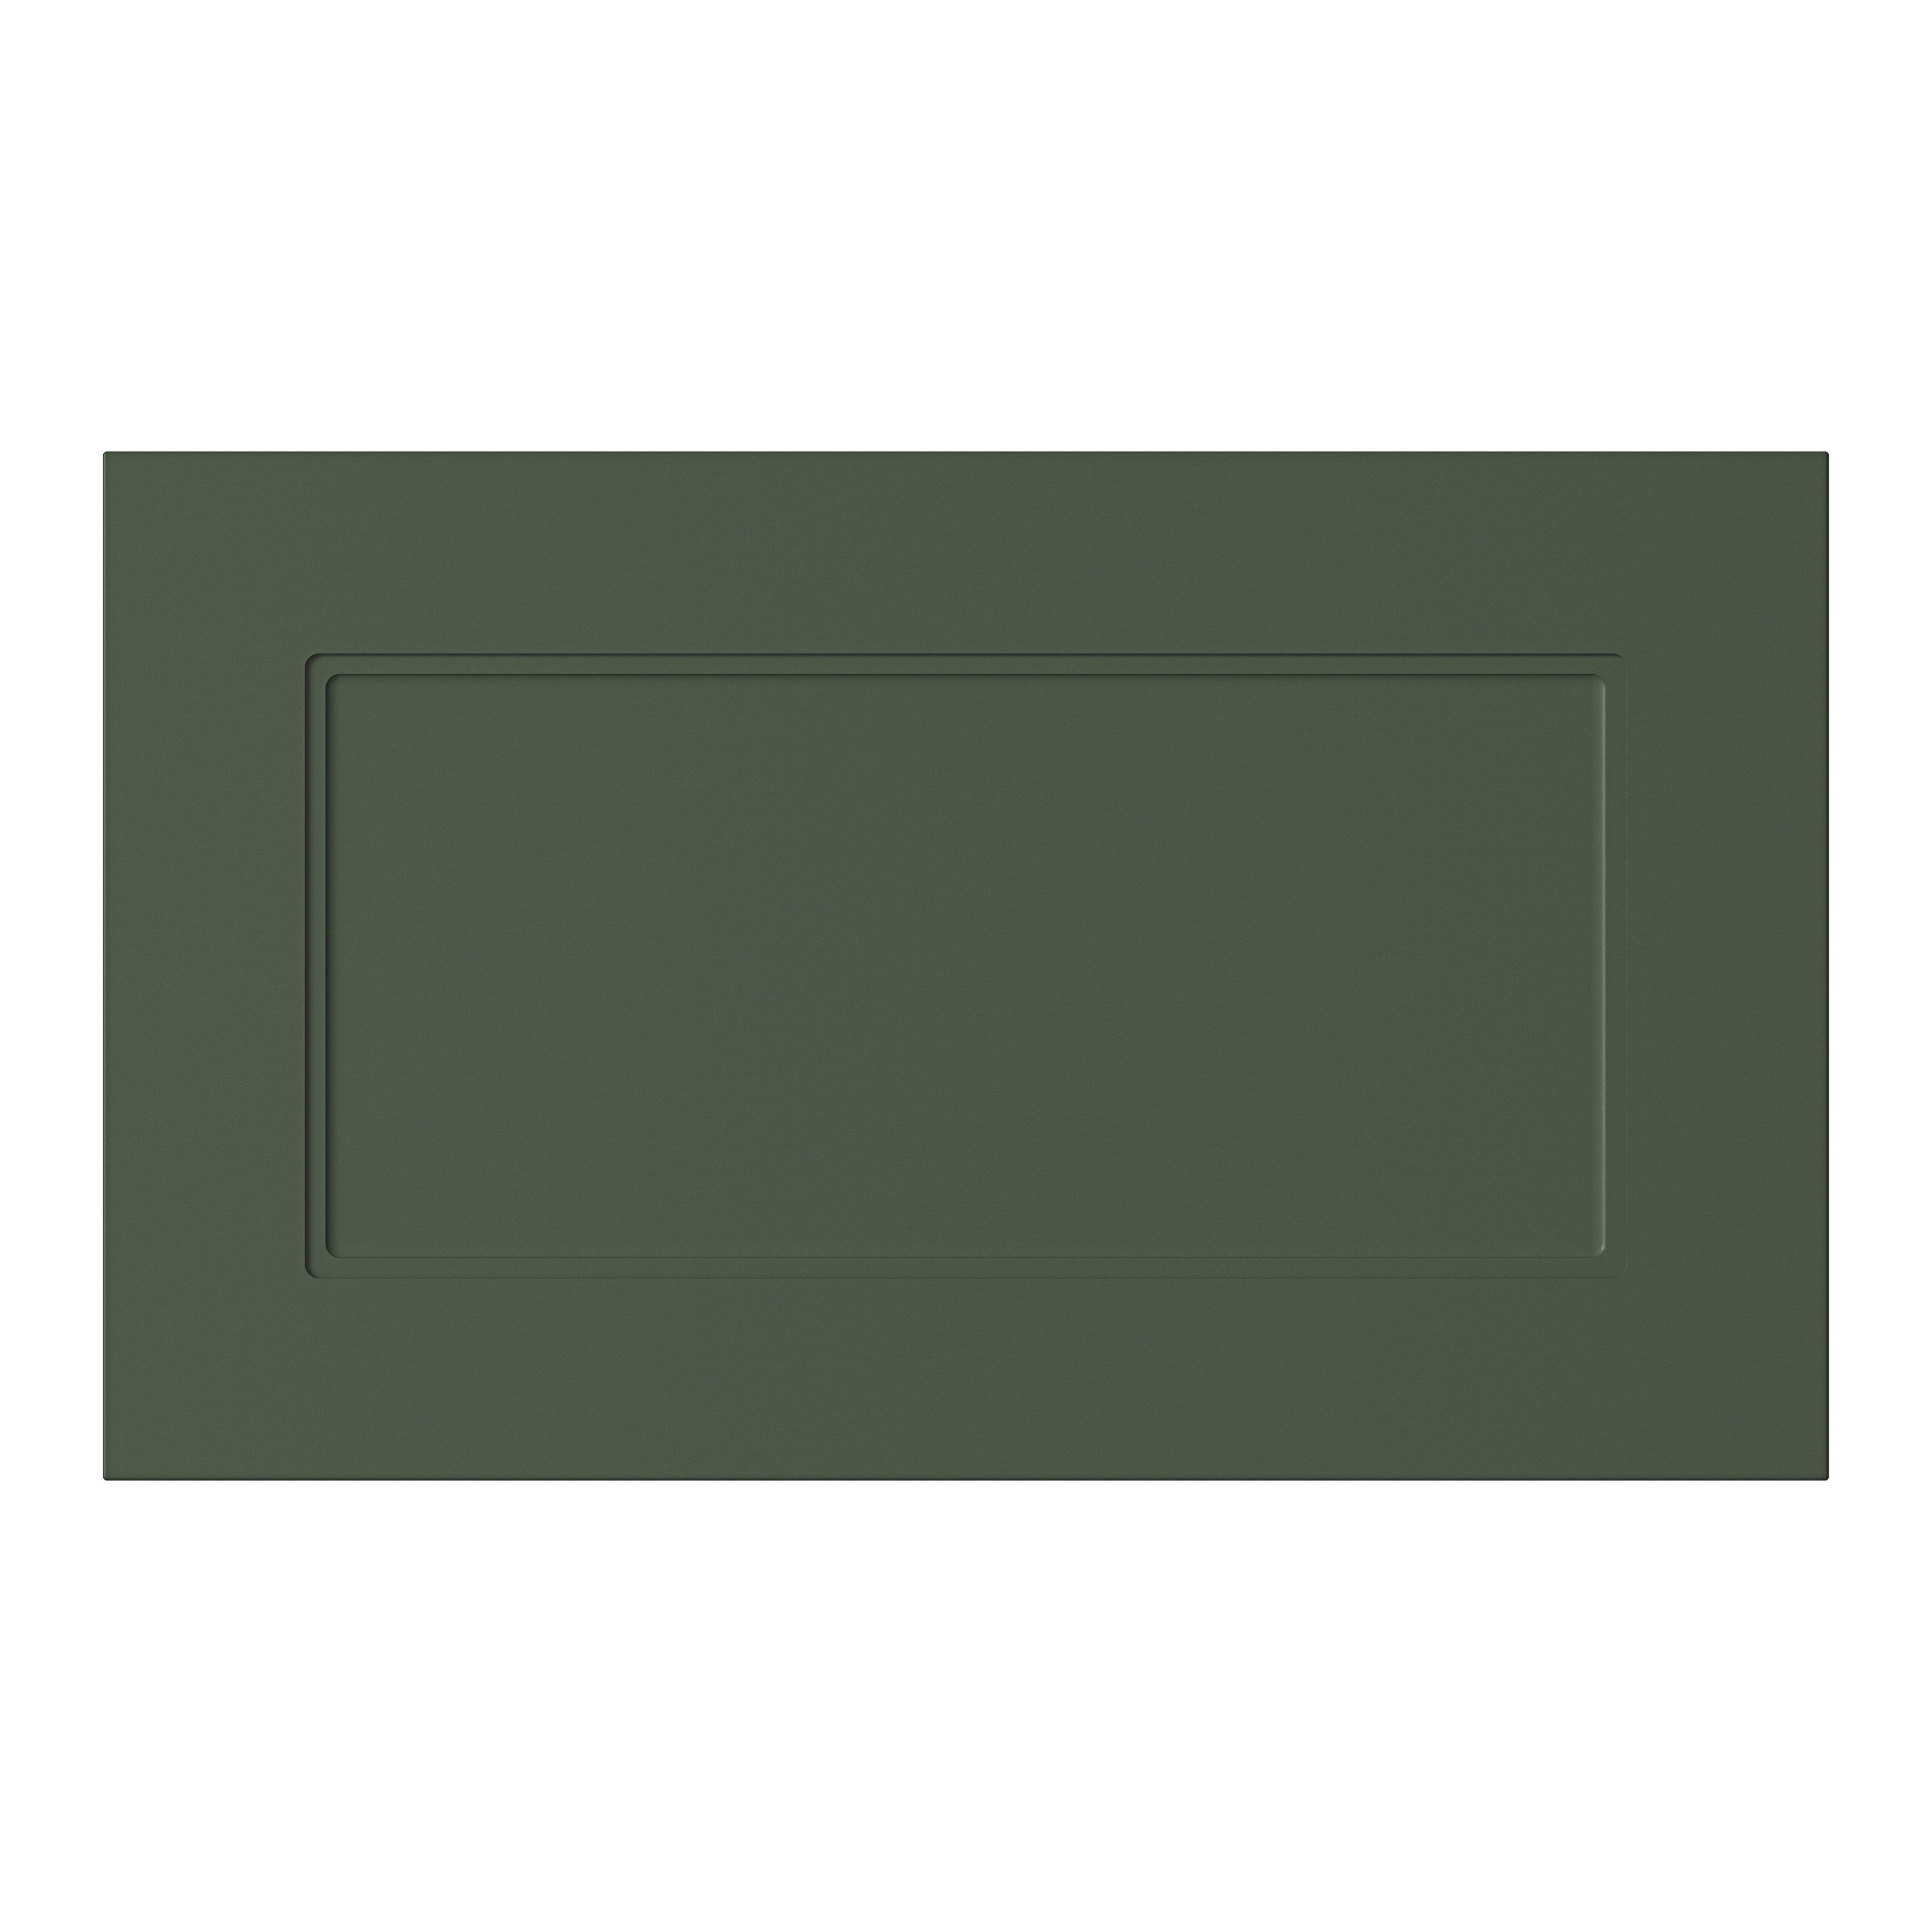 GoodHome Artemisia Matt dark green Drawer front, bridging door & bi fold door, (W)600mm (H)356mm (T)18mm